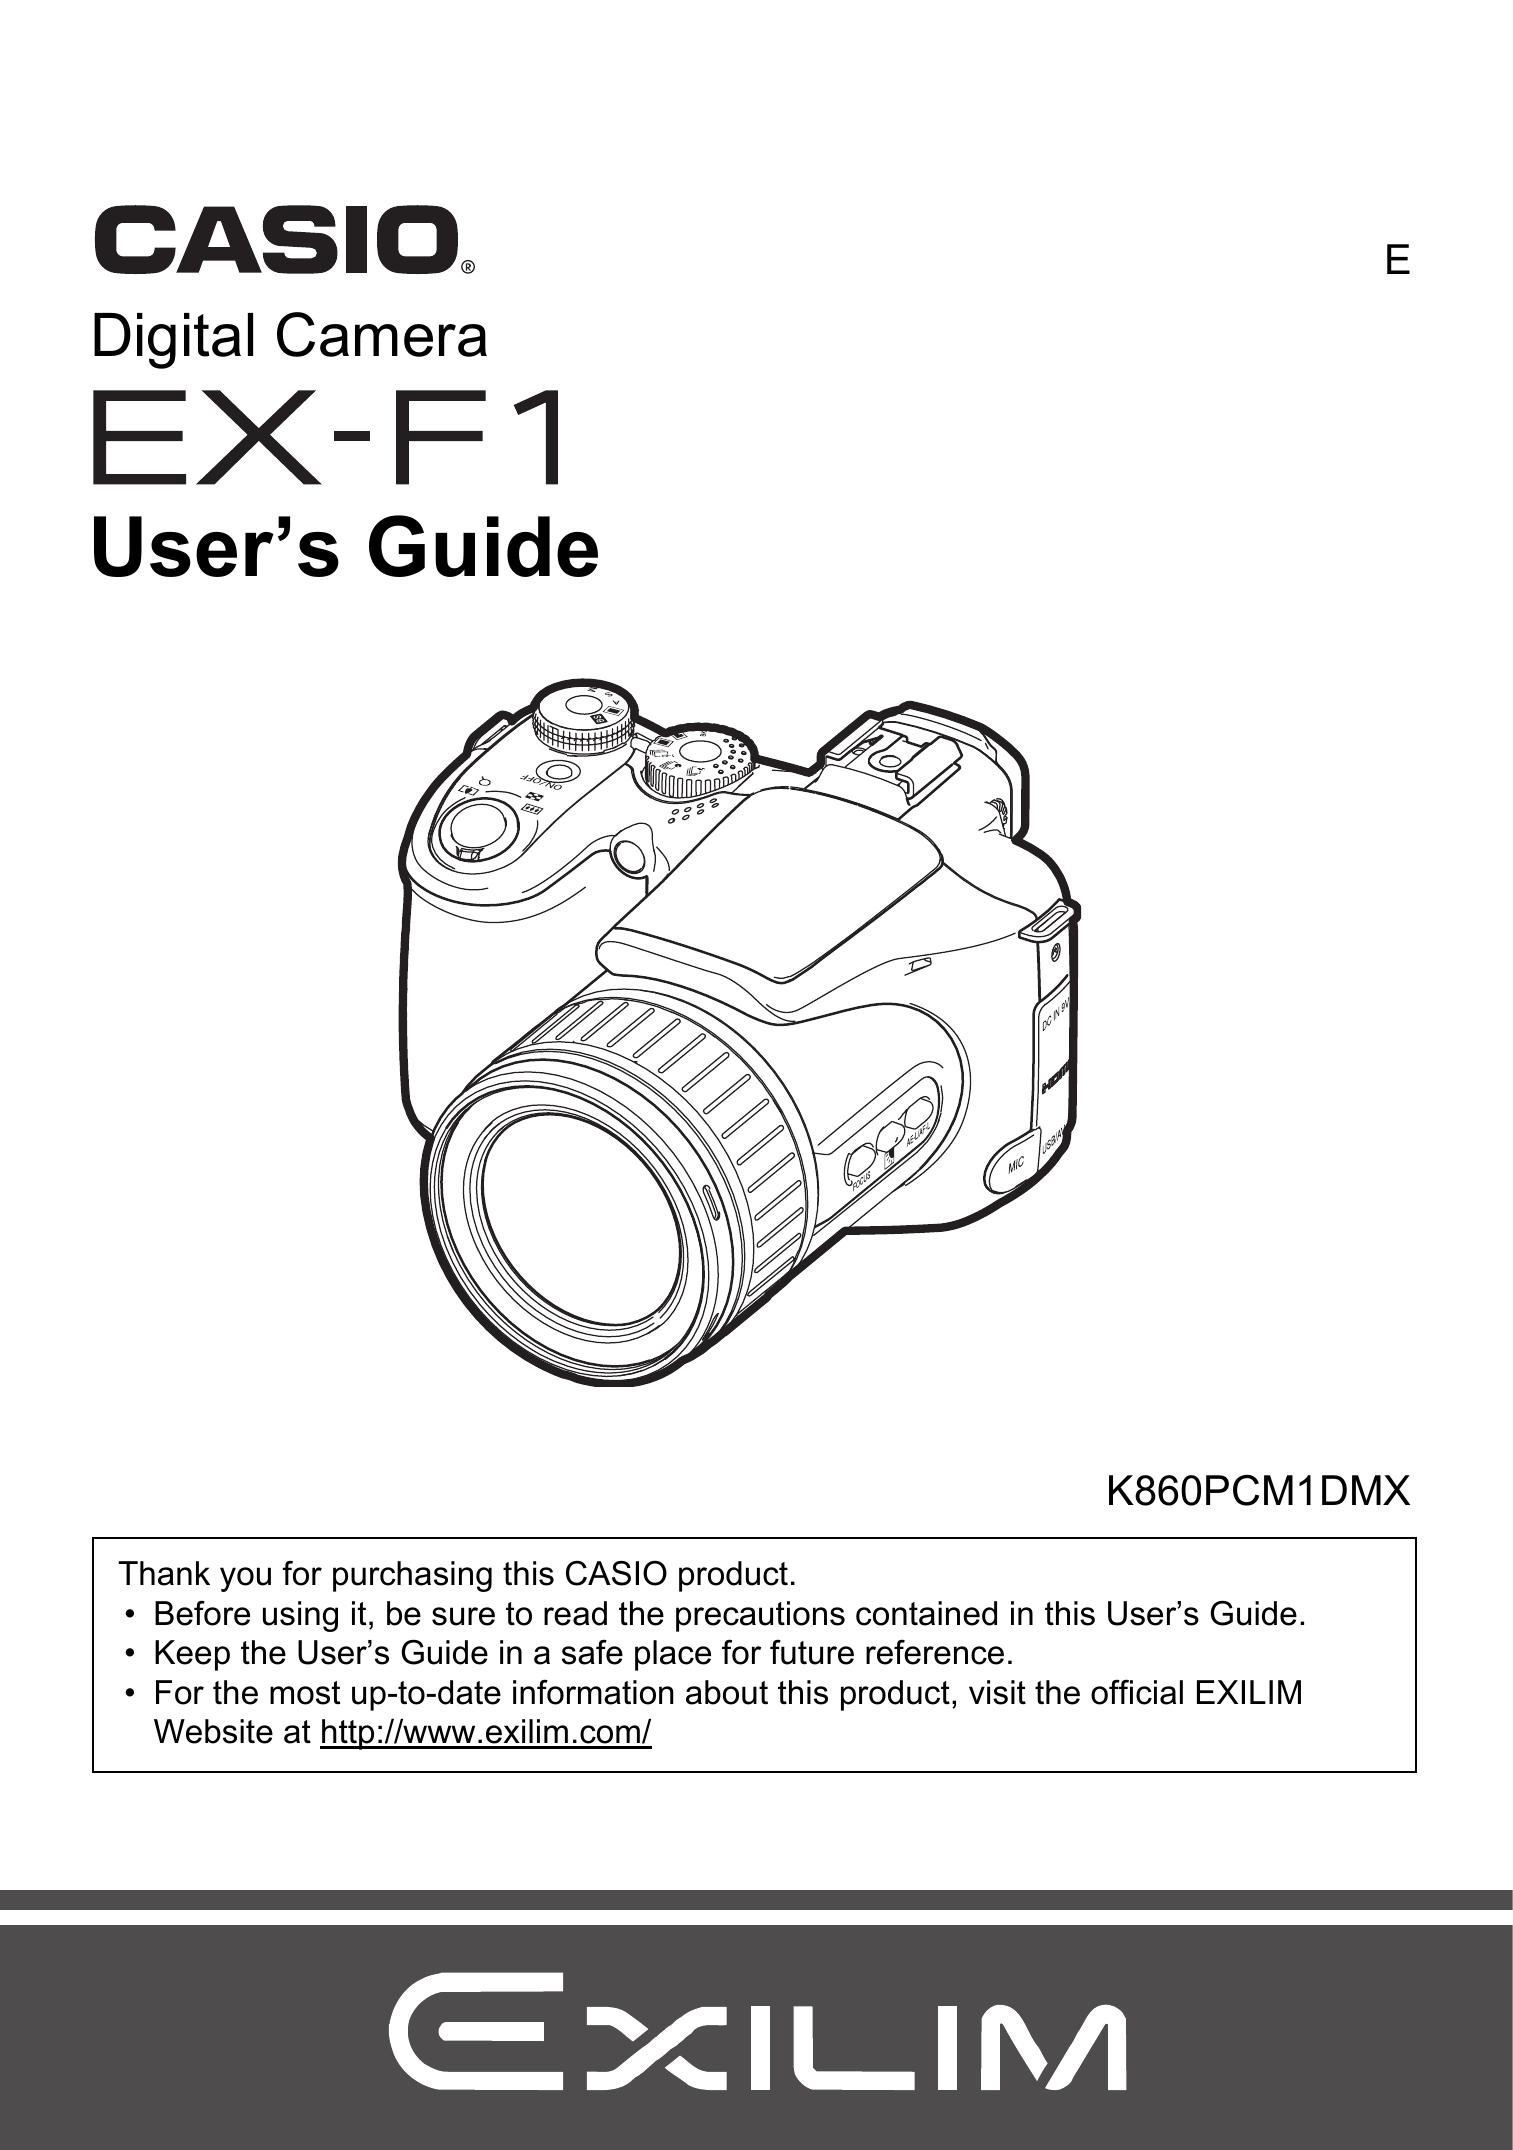 Casio EX-F1 Digital Camera User Manual